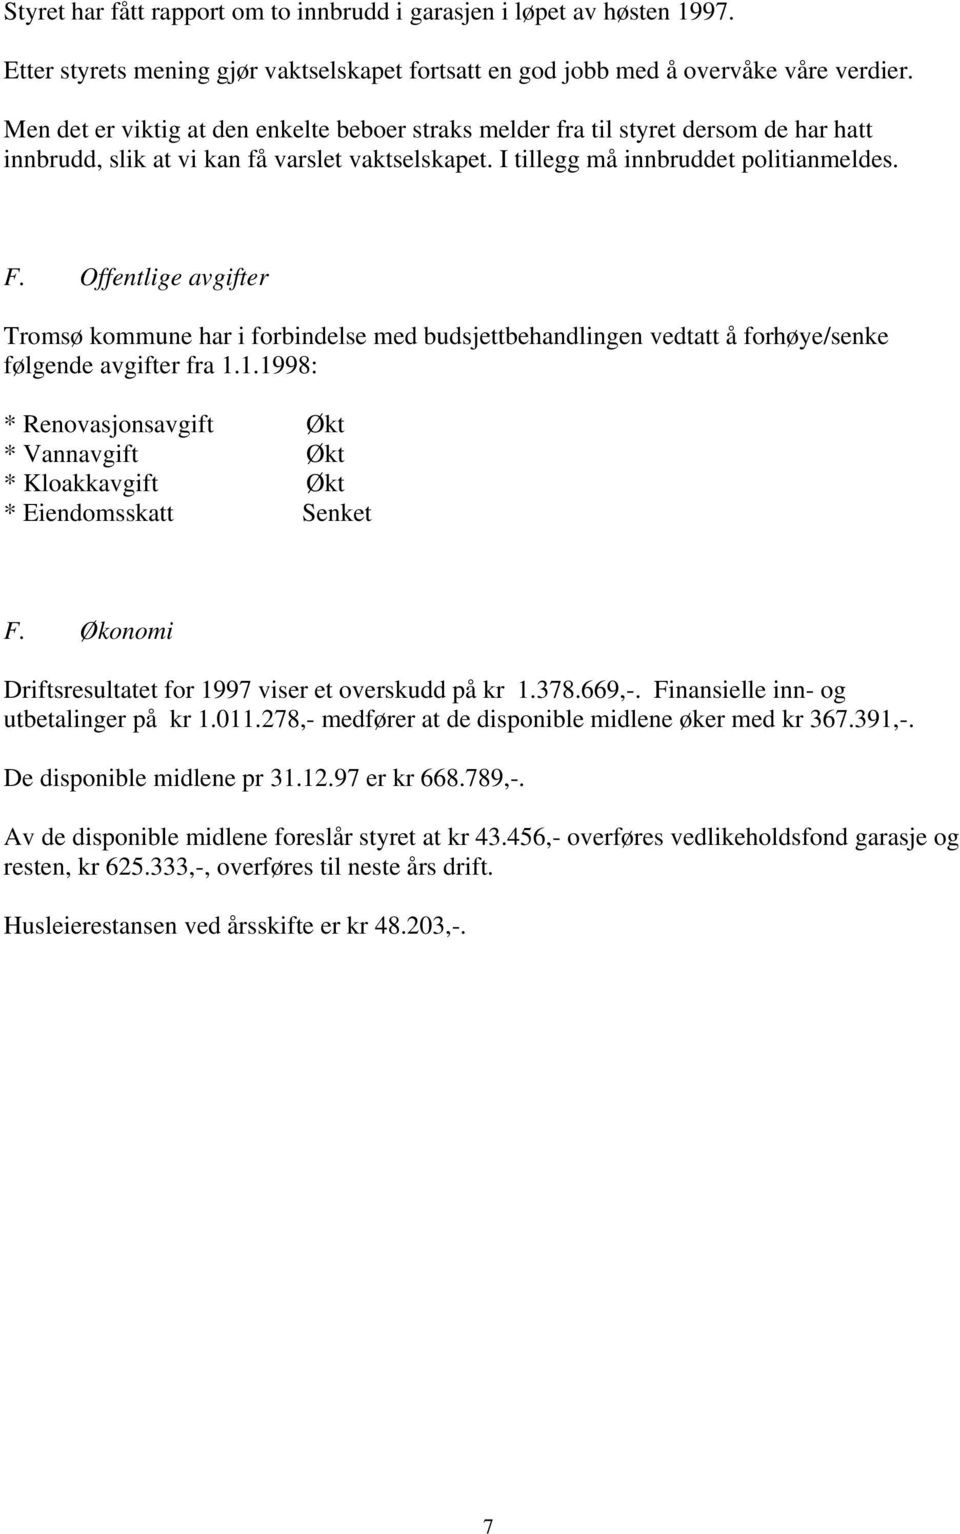 Offentlige avgifter Tromsø kommune har i forbindelse med budsjettbehandlingen vedtatt å forhøye/senke følgende avgifter fra 1.